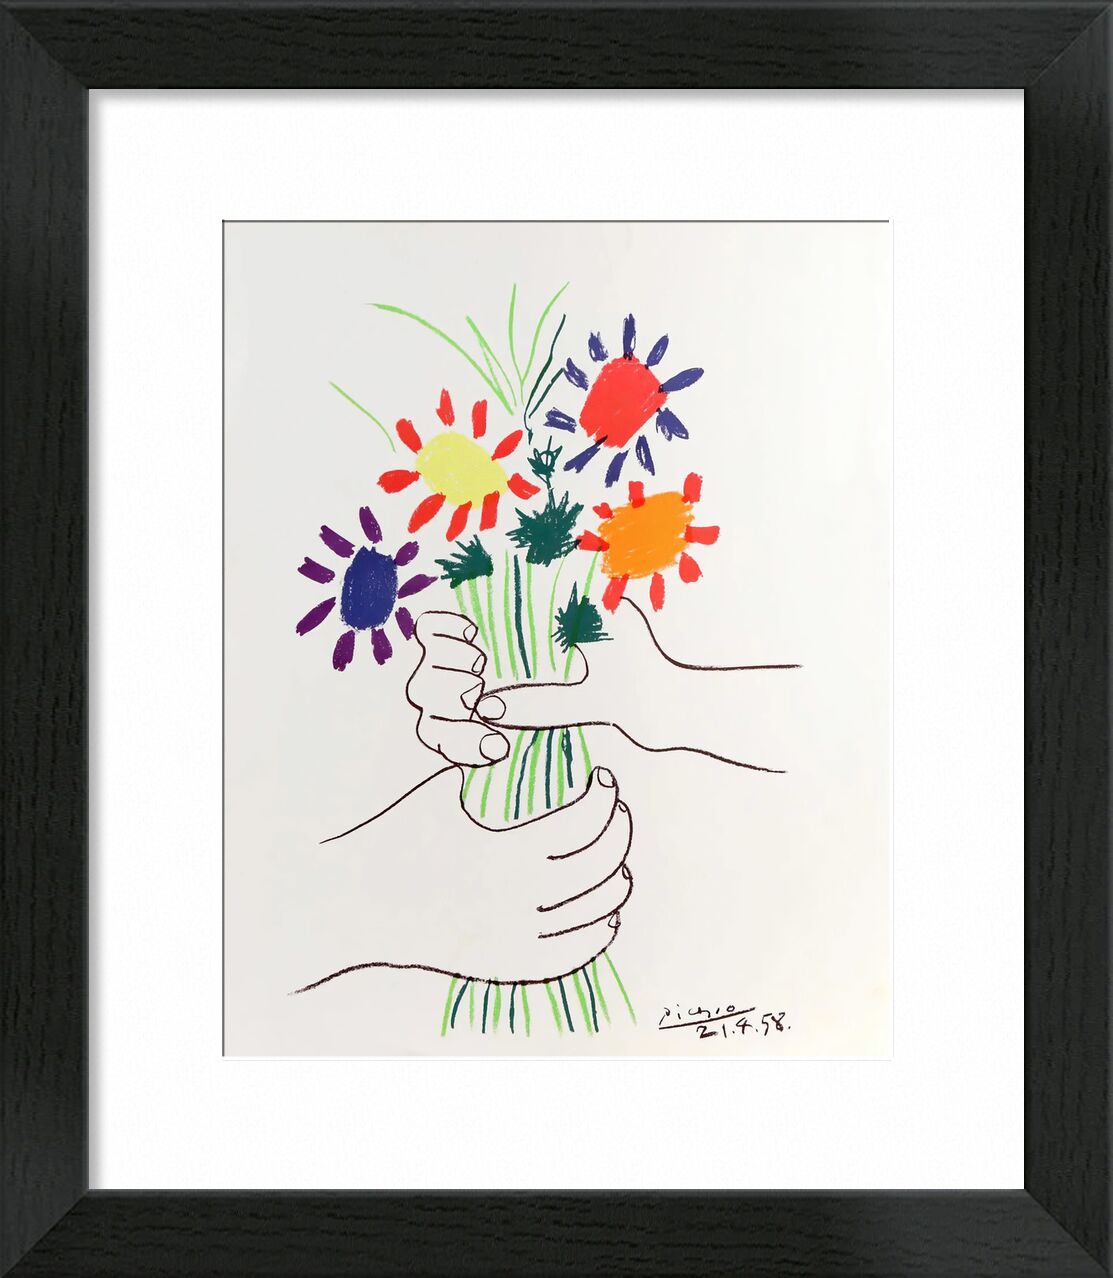 Blumenstrauß des Friedens - 1958 von Bildende Kunst, Prodi Art, Bündel, Blume, PABLO PICASSO, Picasso, Frieden